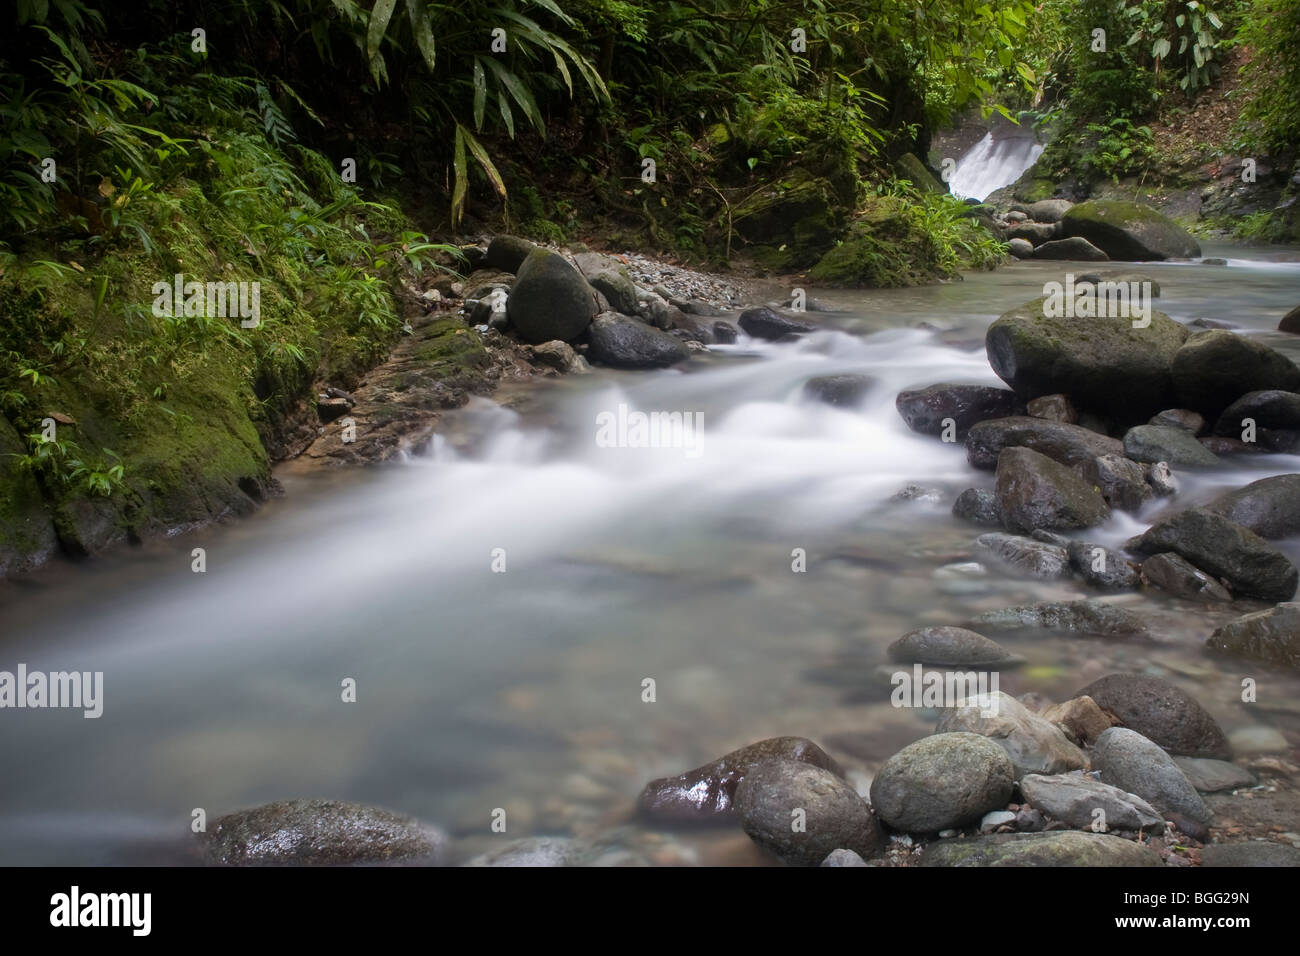 Luxuriante forêt tropicale et de la chute d'eau. Photographié dans le Darien, le Panama. Banque D'Images